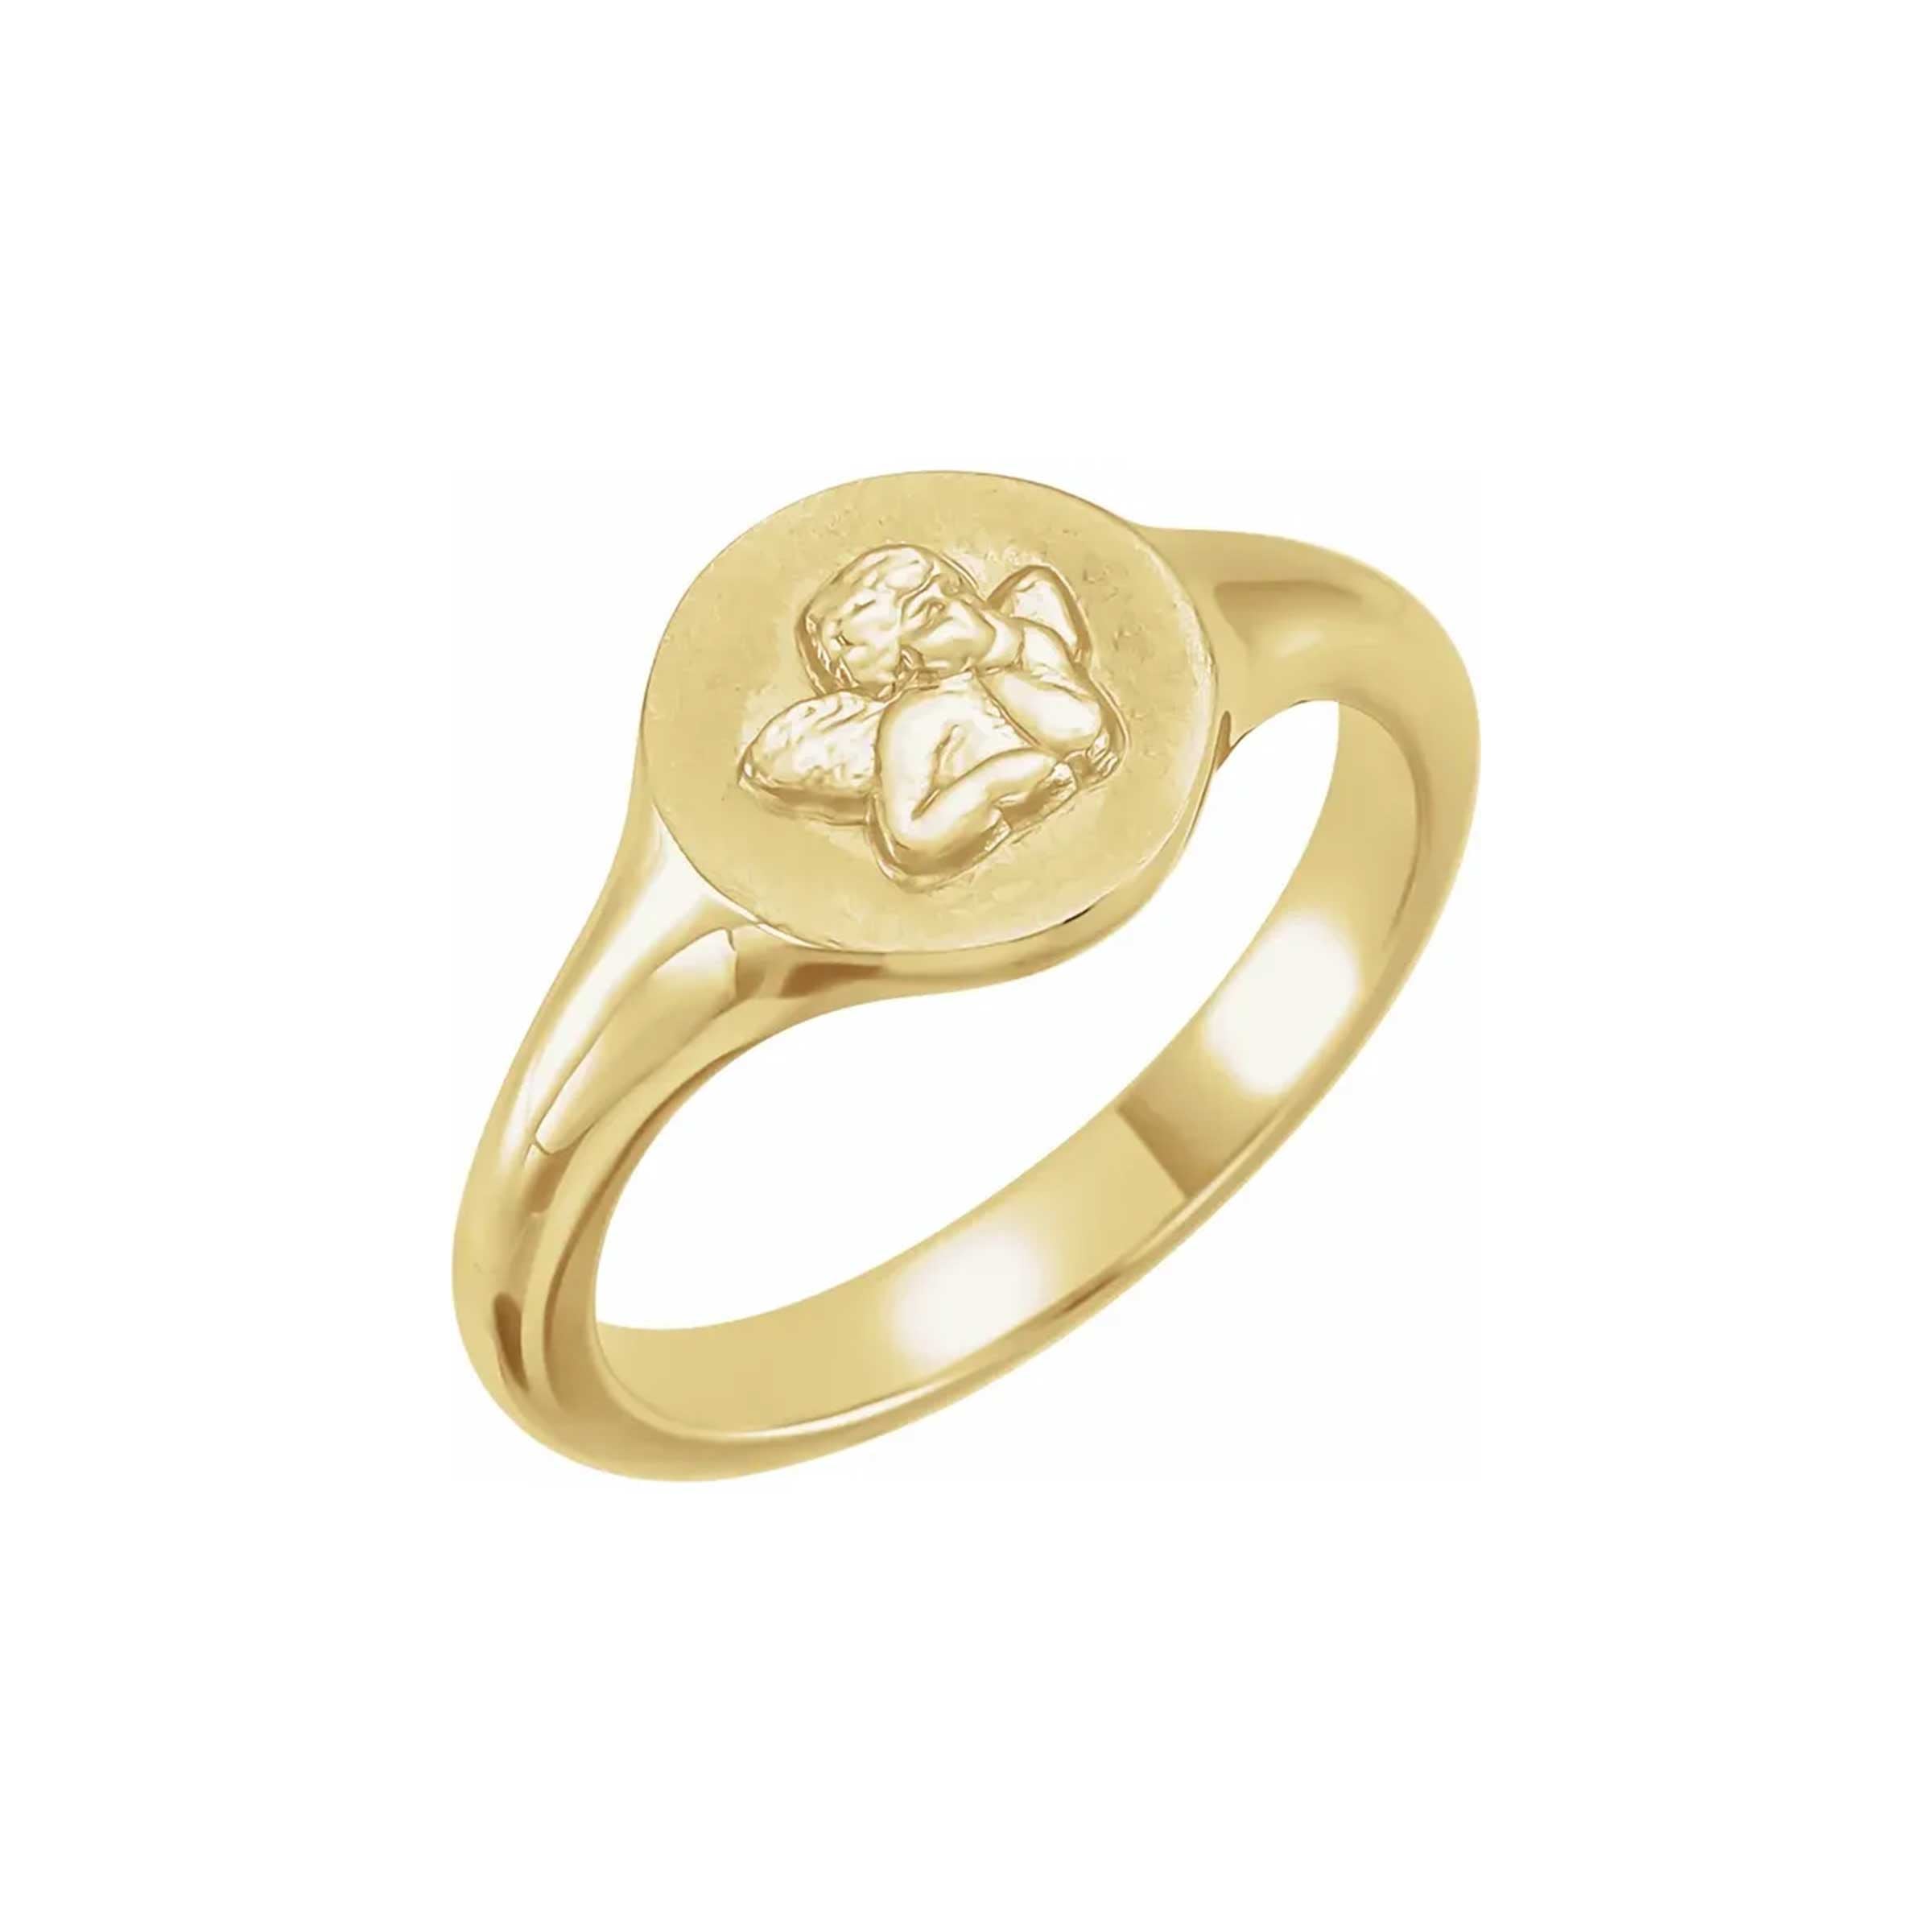 Rose Gold and Black Diamonds Signet Ring, Statement Gold With Black  Diamonds Pinky Ring, Unisex Little Finger Diamond Ring - Etsy